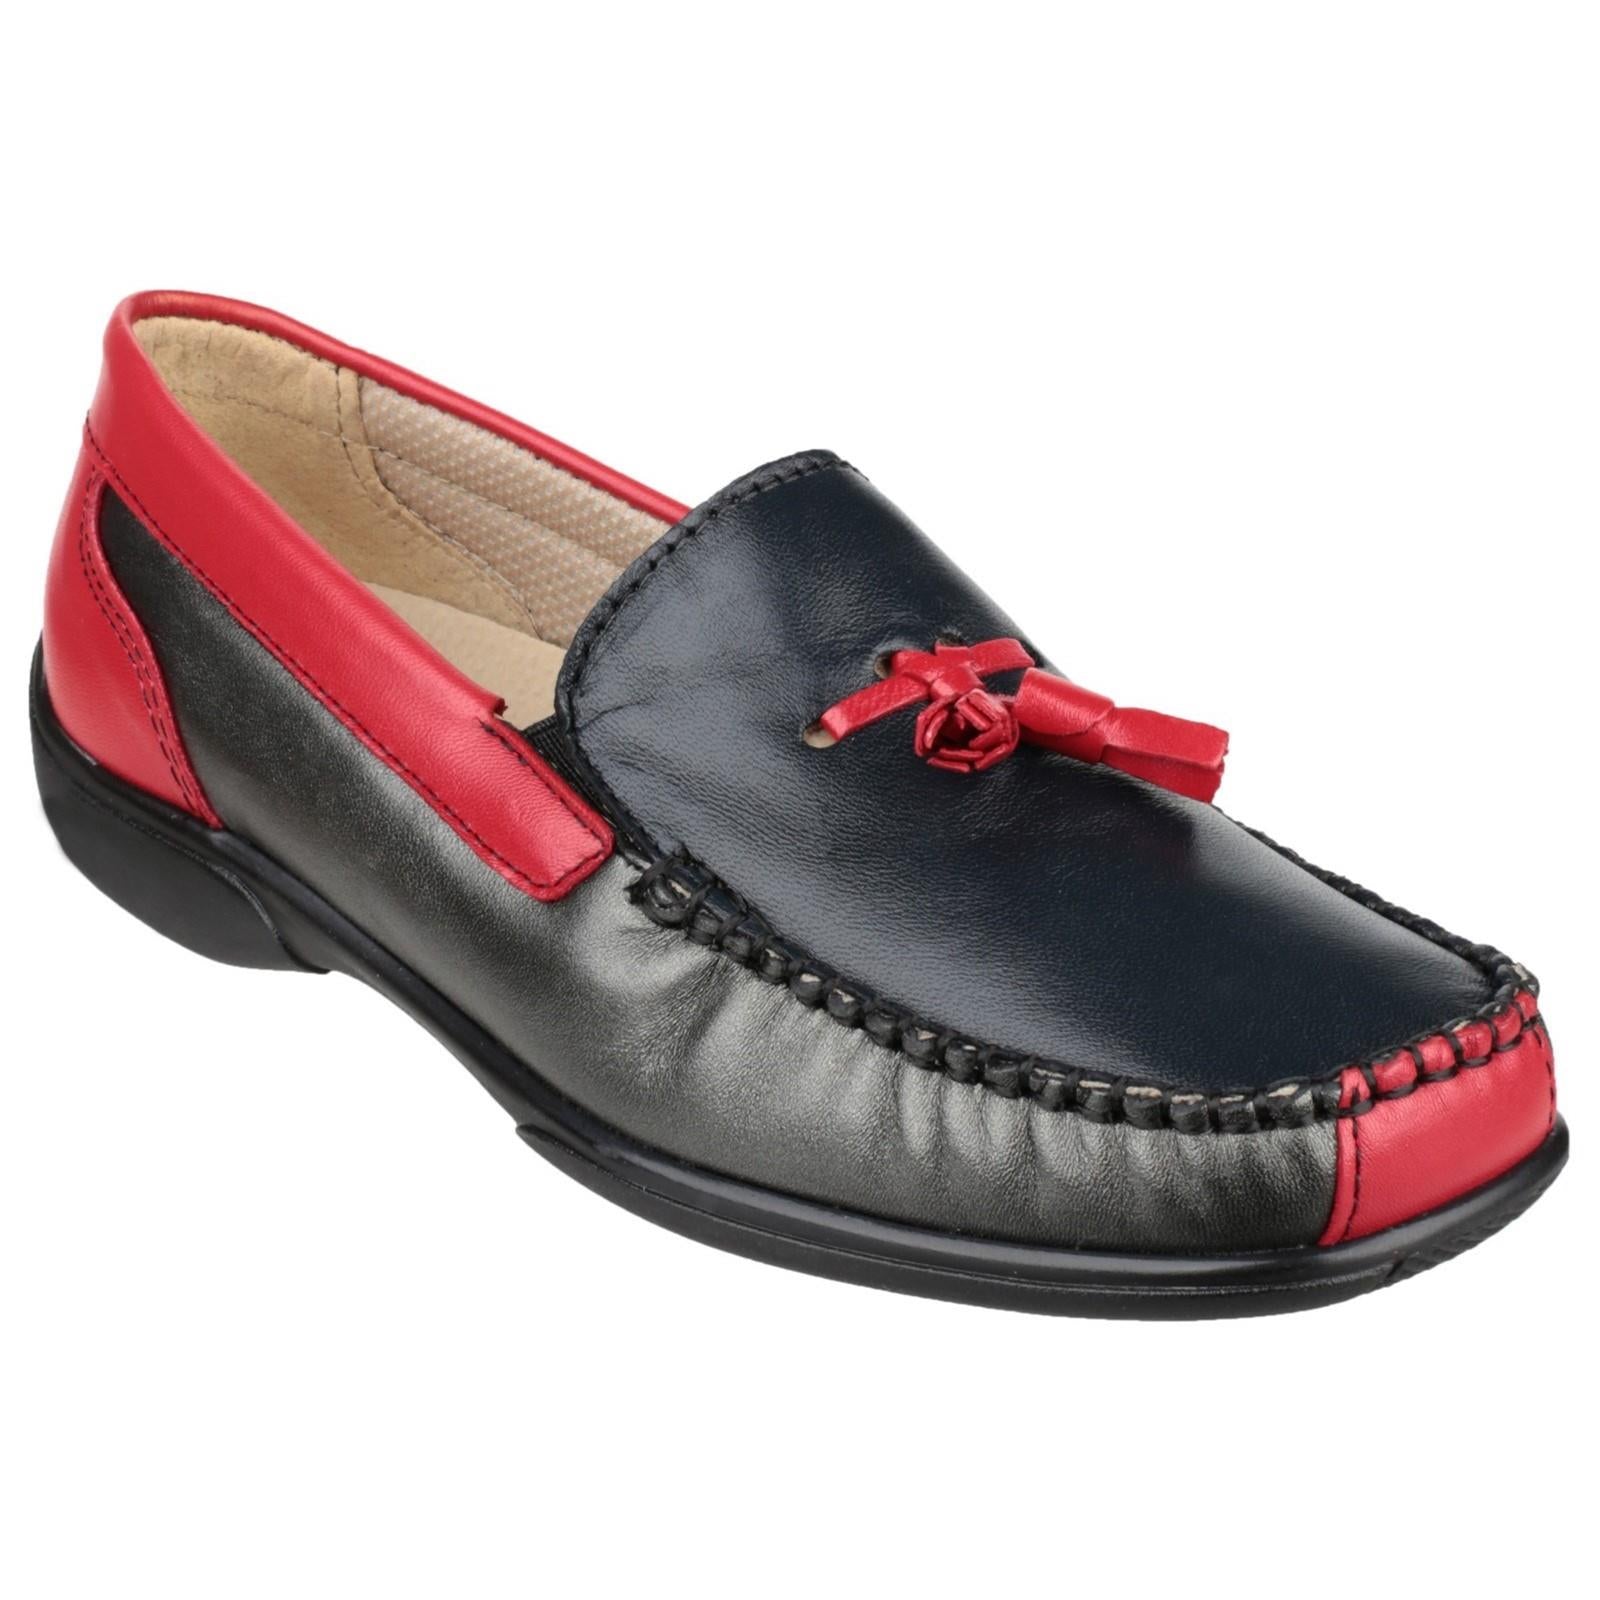 Cotswold Biddlestone multi women's slip on extra wide lightweight loafer shoe